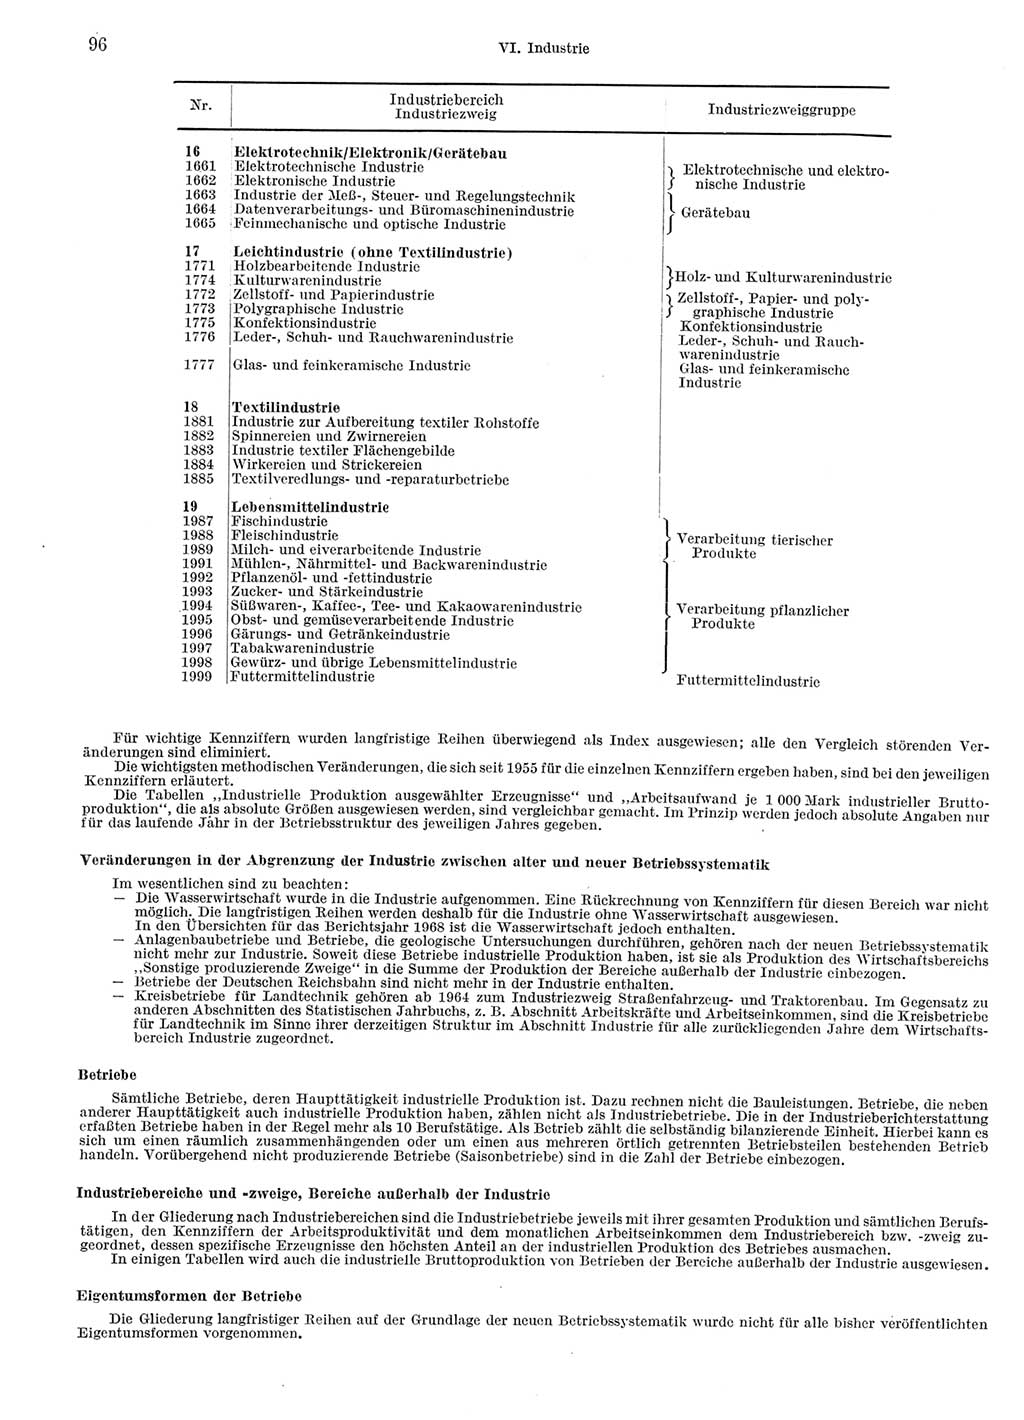 Statistisches Jahrbuch der Deutschen Demokratischen Republik (DDR) 1969, Seite 96 (Stat. Jb. DDR 1969, S. 96)